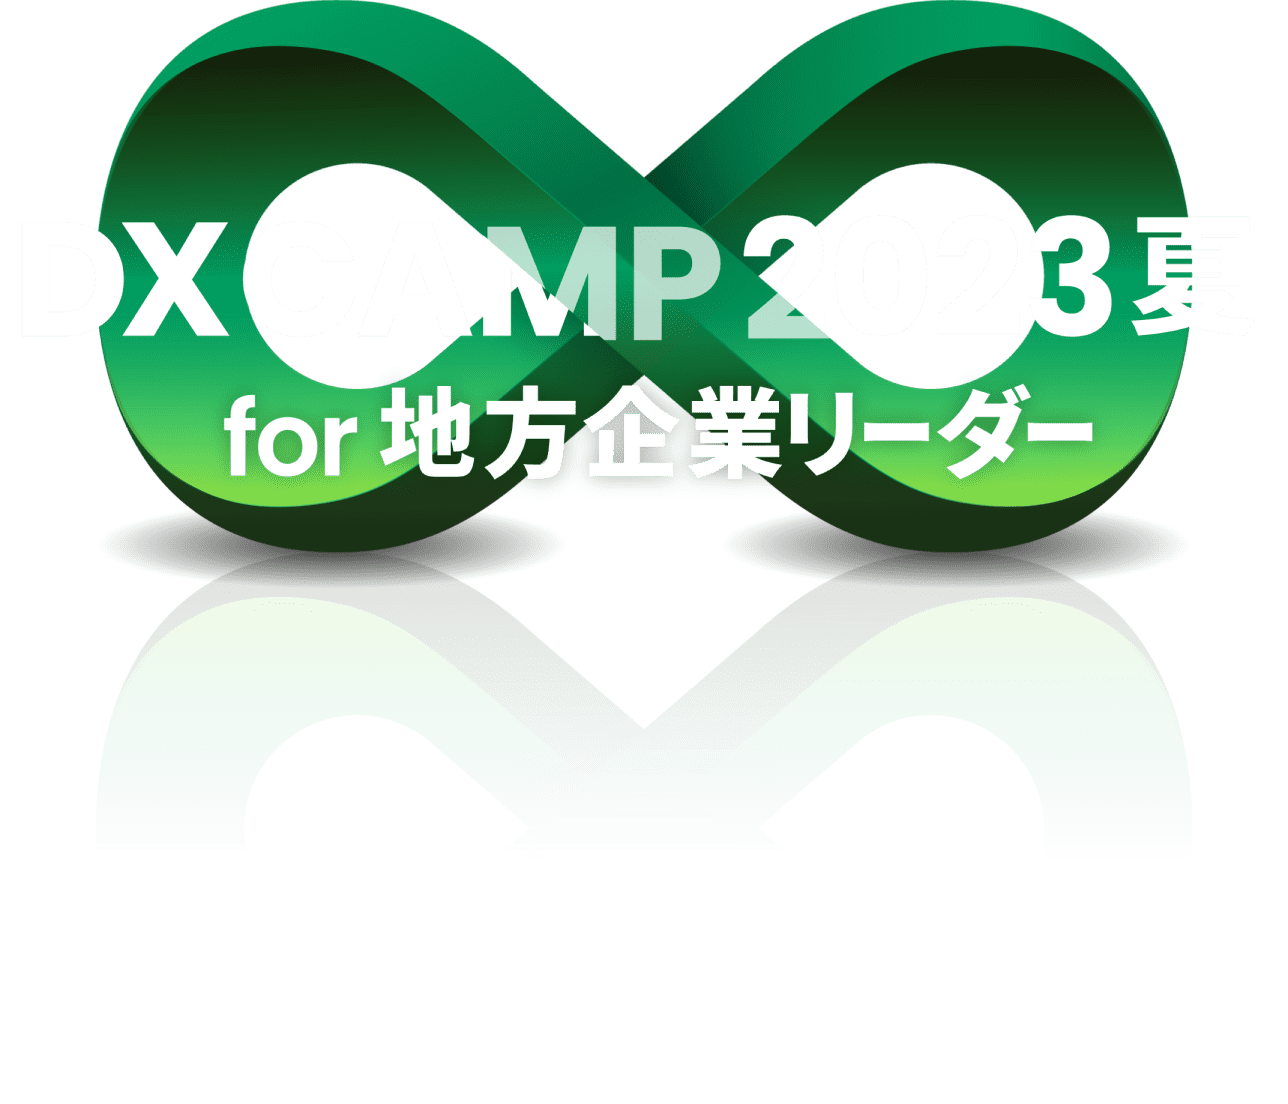 DX CAMP2023 for 地方企業リーダー